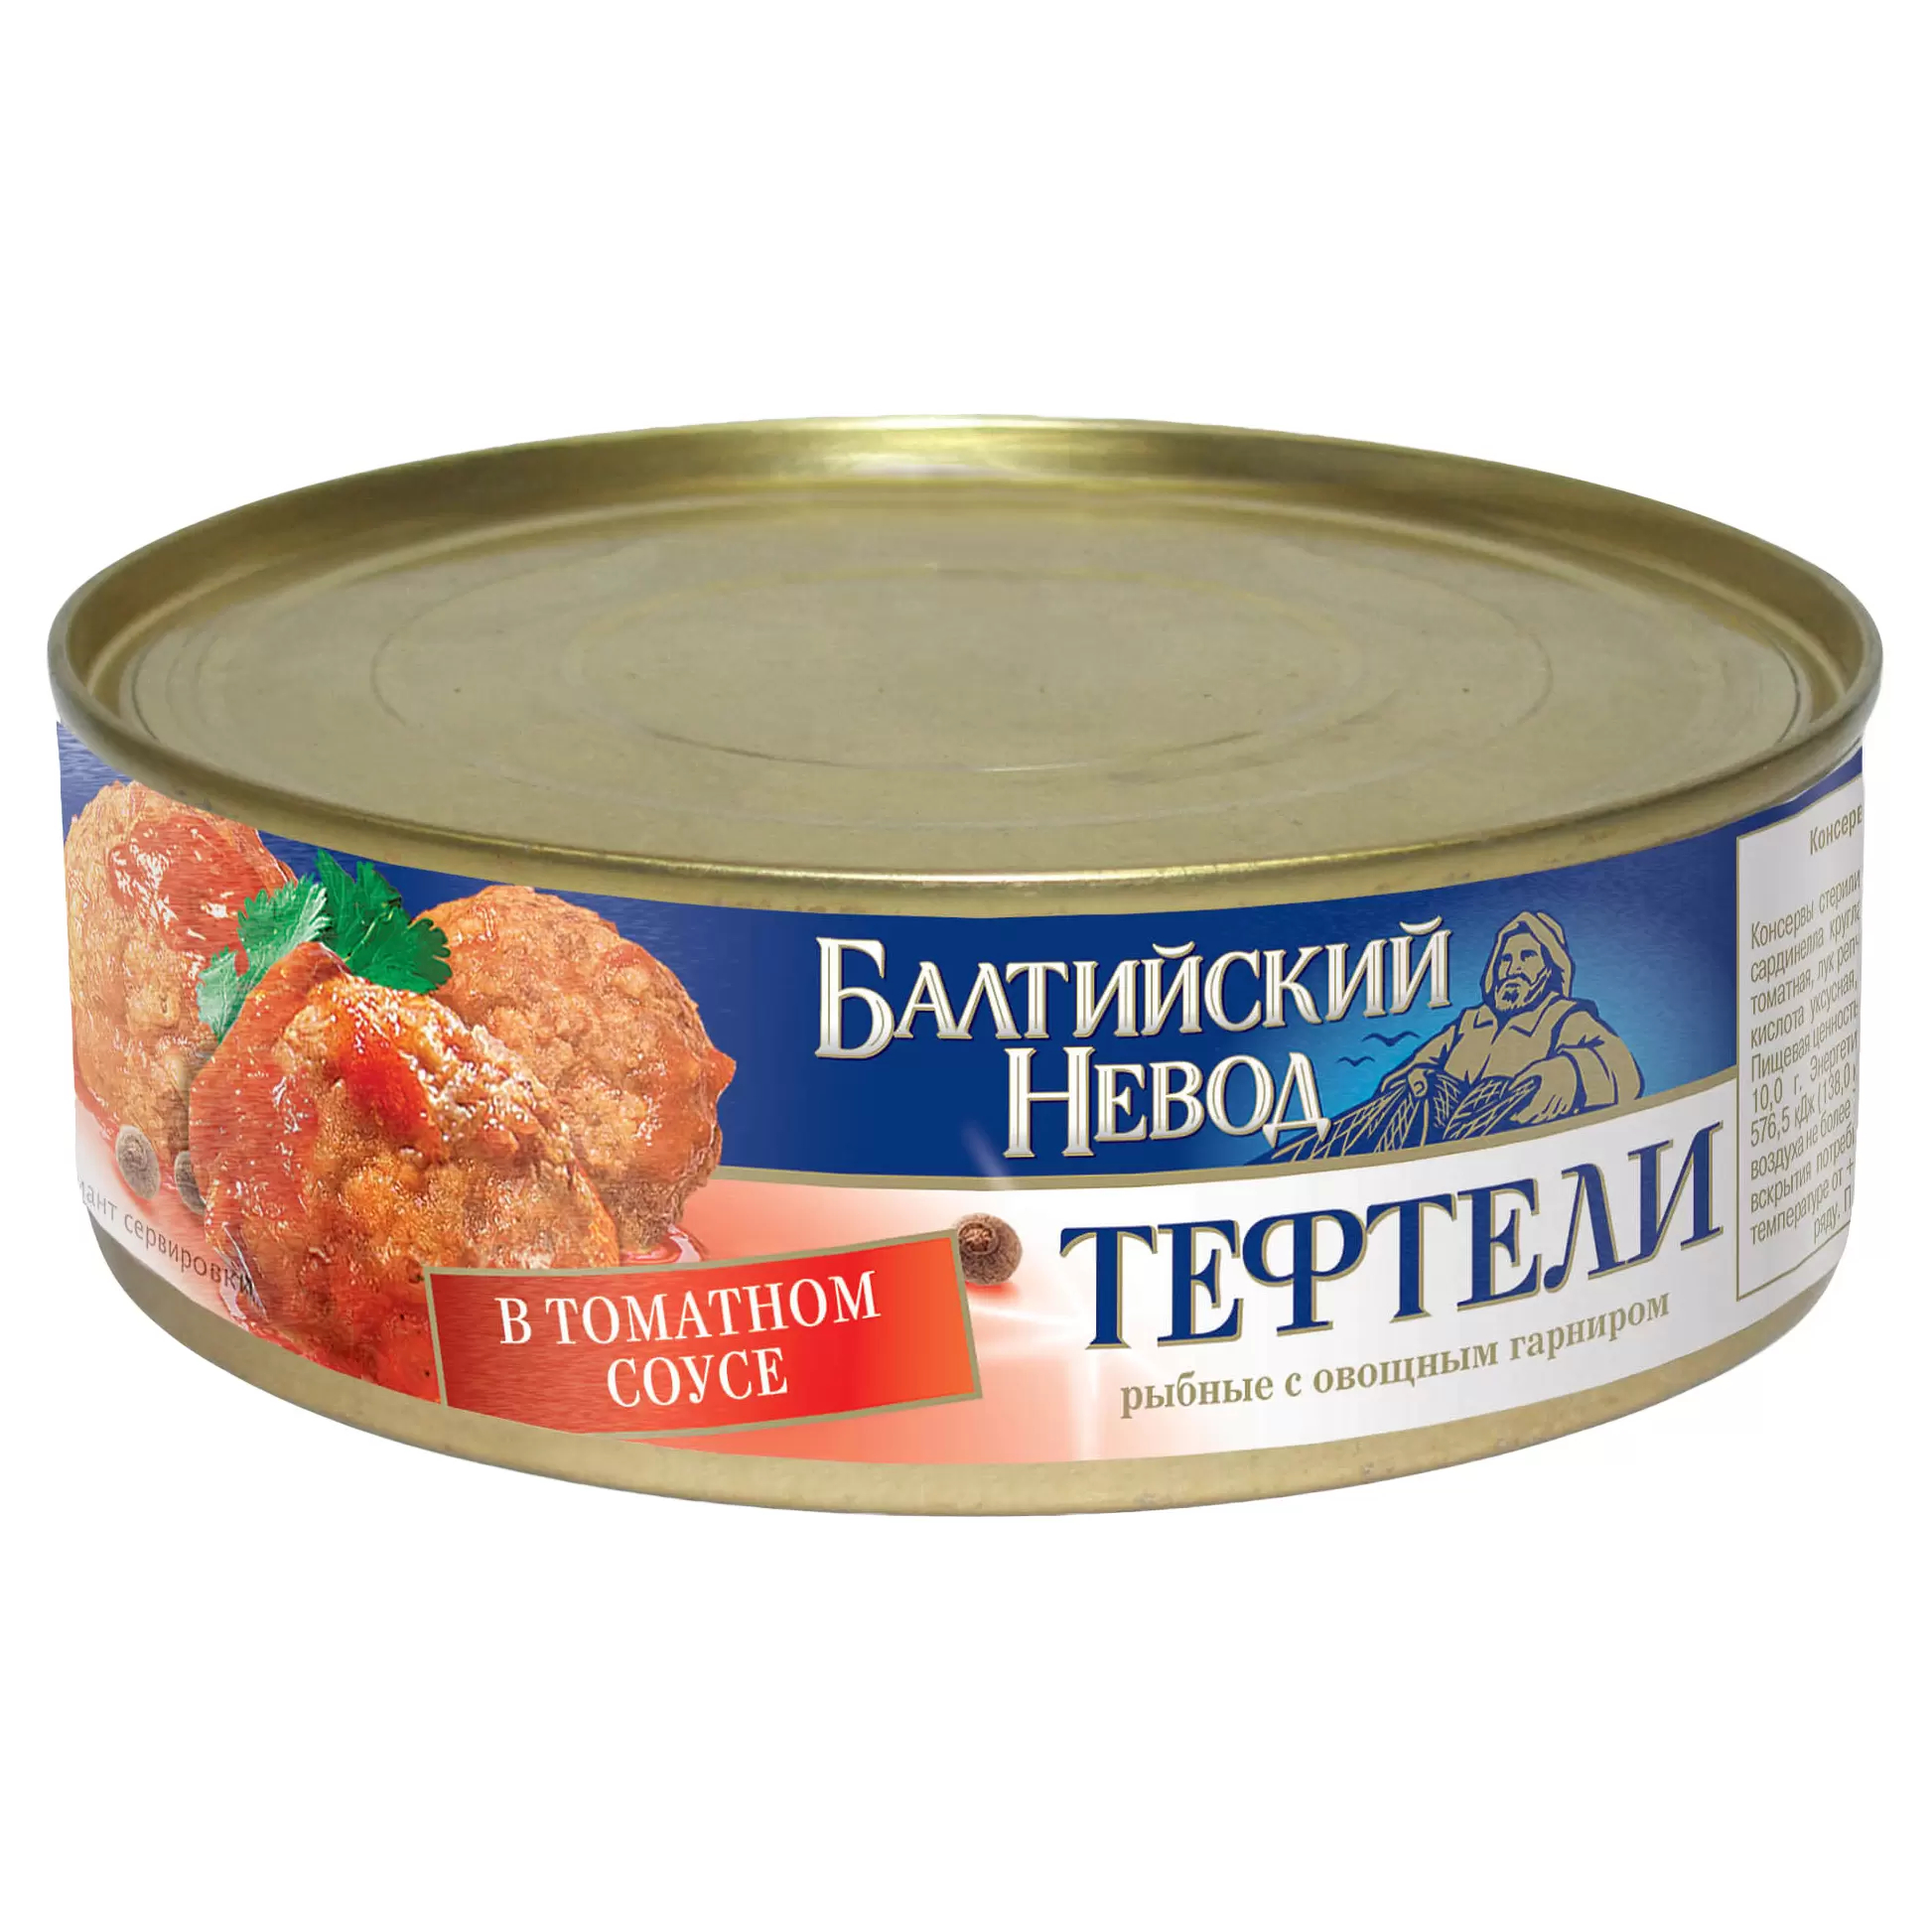 фото Тефтели рыбные главпродукт балтийский невод с овощным гарниром в томатном соусе 230 г